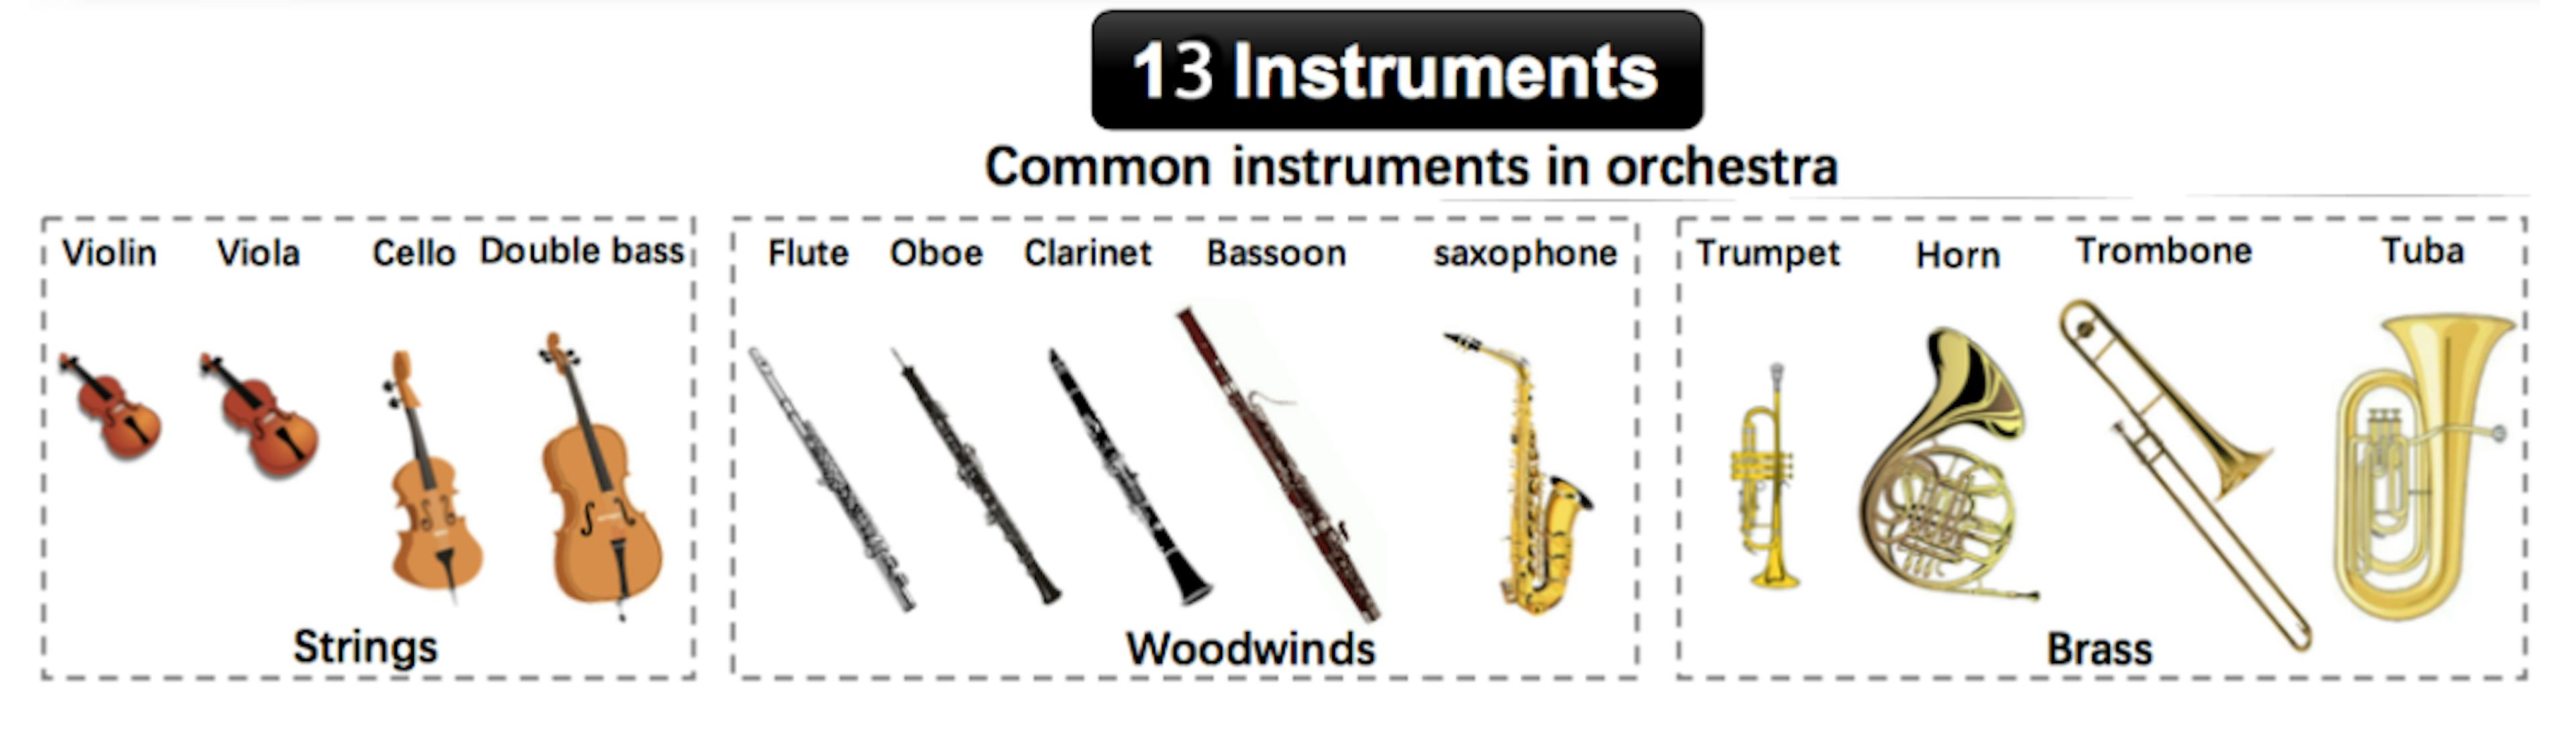 图 1. 独奏乐器和 URMP 乐器类别。图片改编自 [1]。